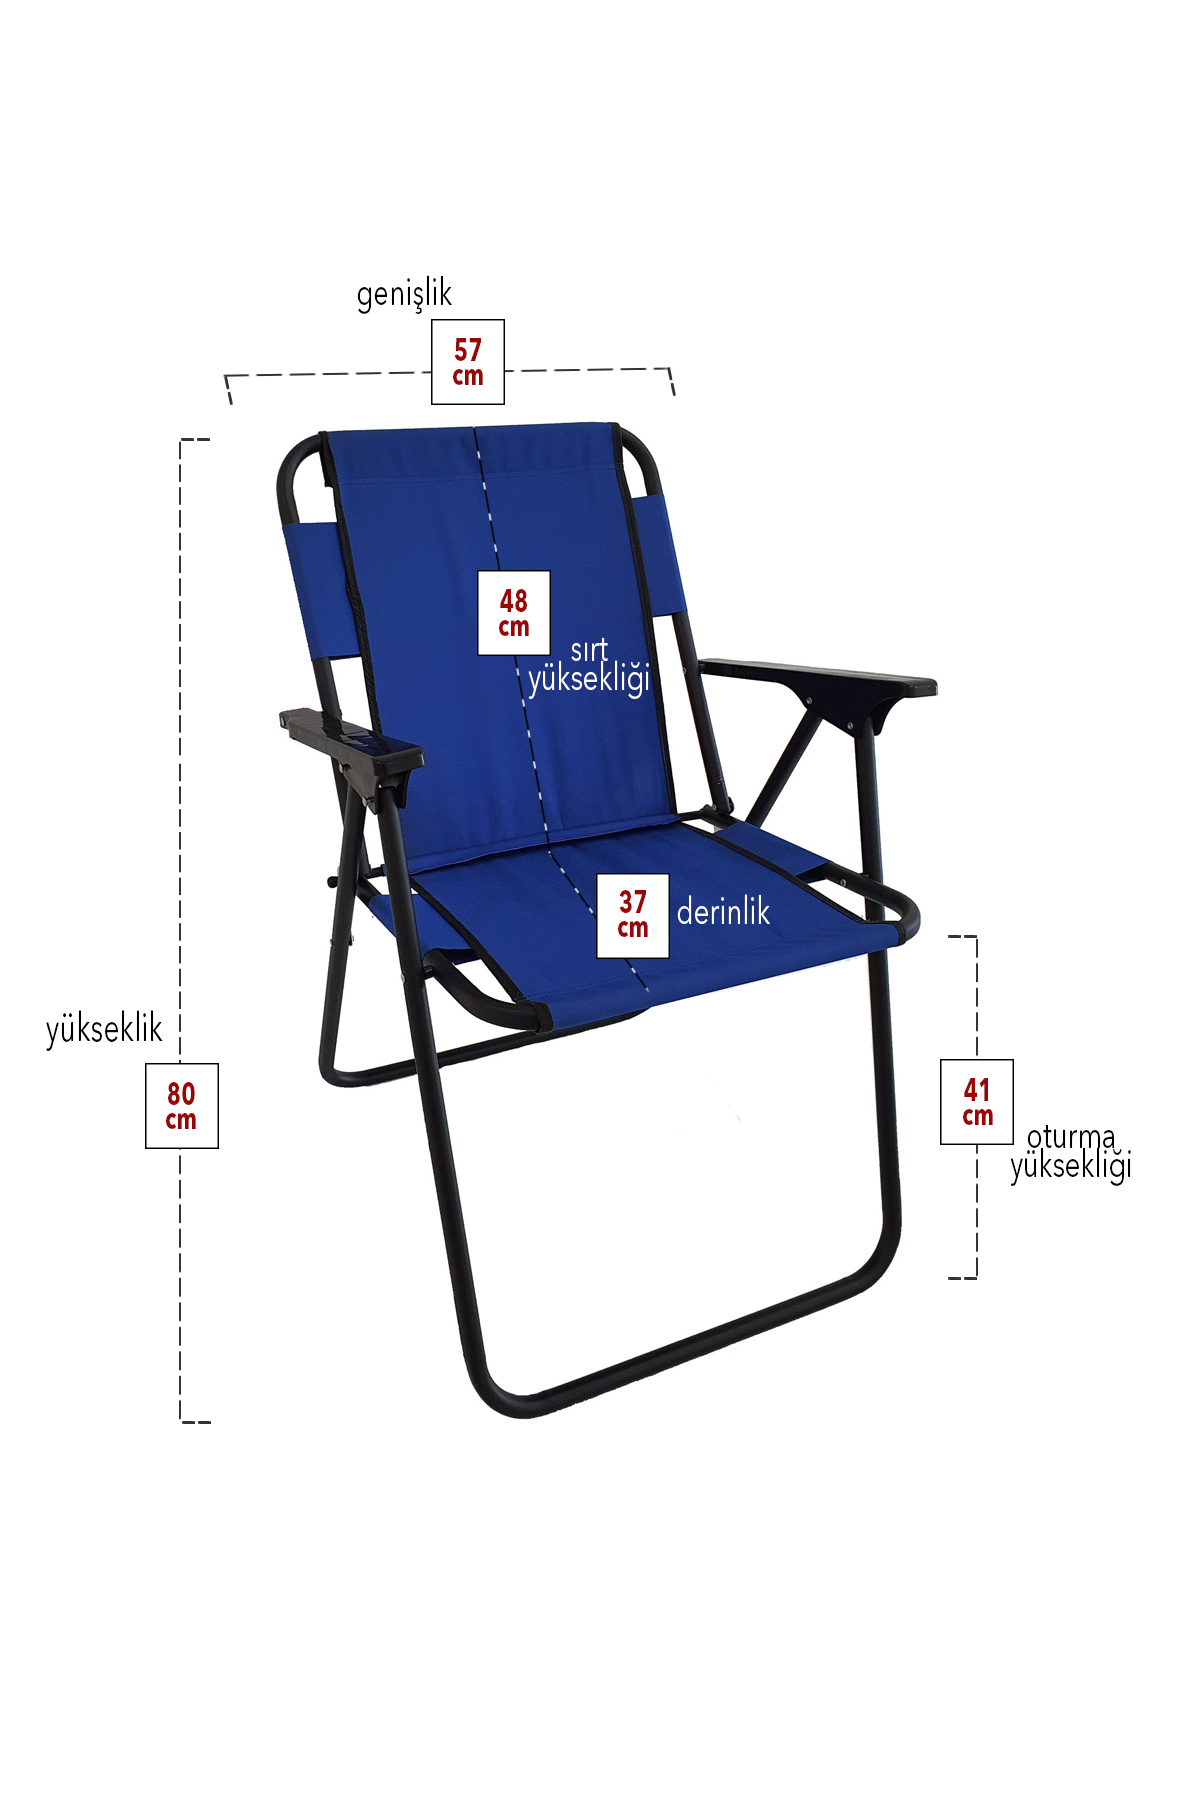 Bofigo 4 Pcs Camping Chair Folding Chair Picnic Chair Beach Chair Blue